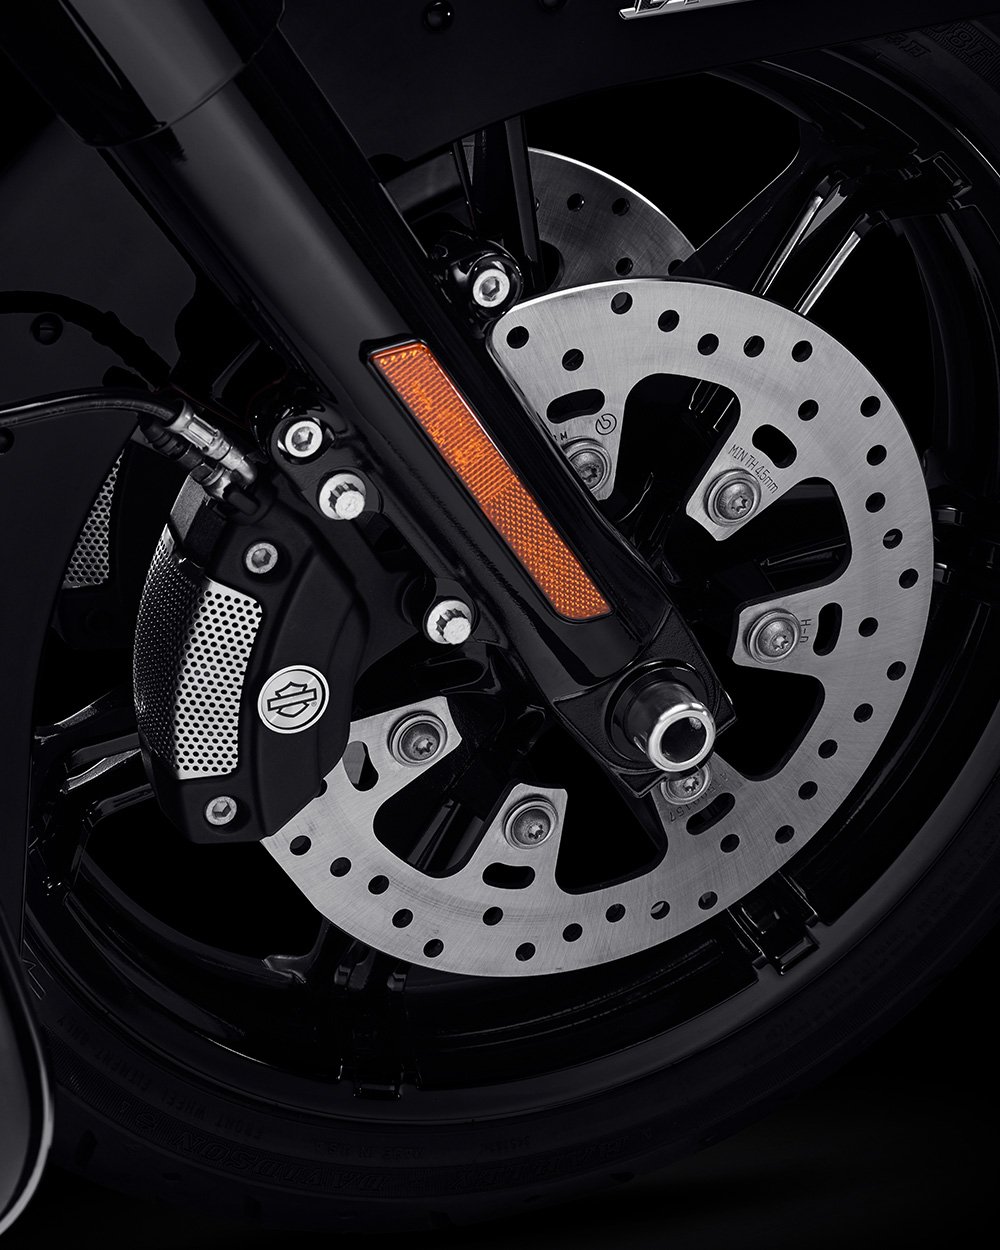 2022 Road Glide motosiklette İsteğe Bağlı ABS’li Reflex Bağlantılı Brembo Frenler